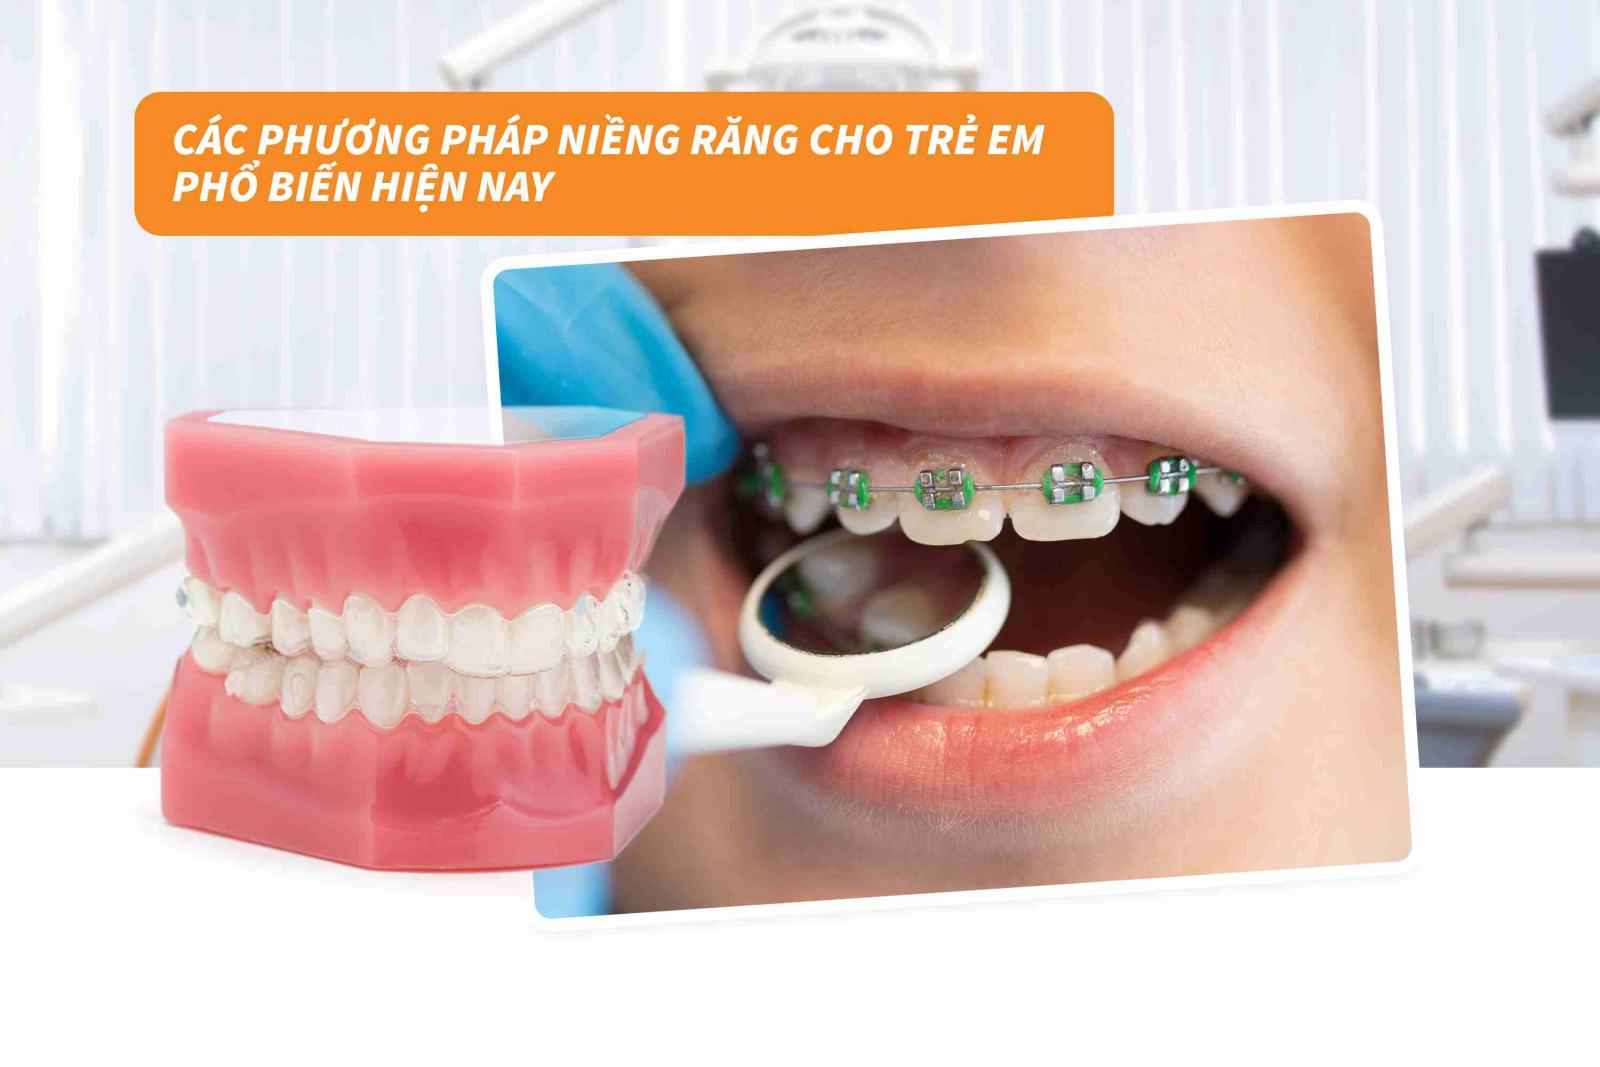 Giá niềng răng cho trẻ em theo từng phương pháp